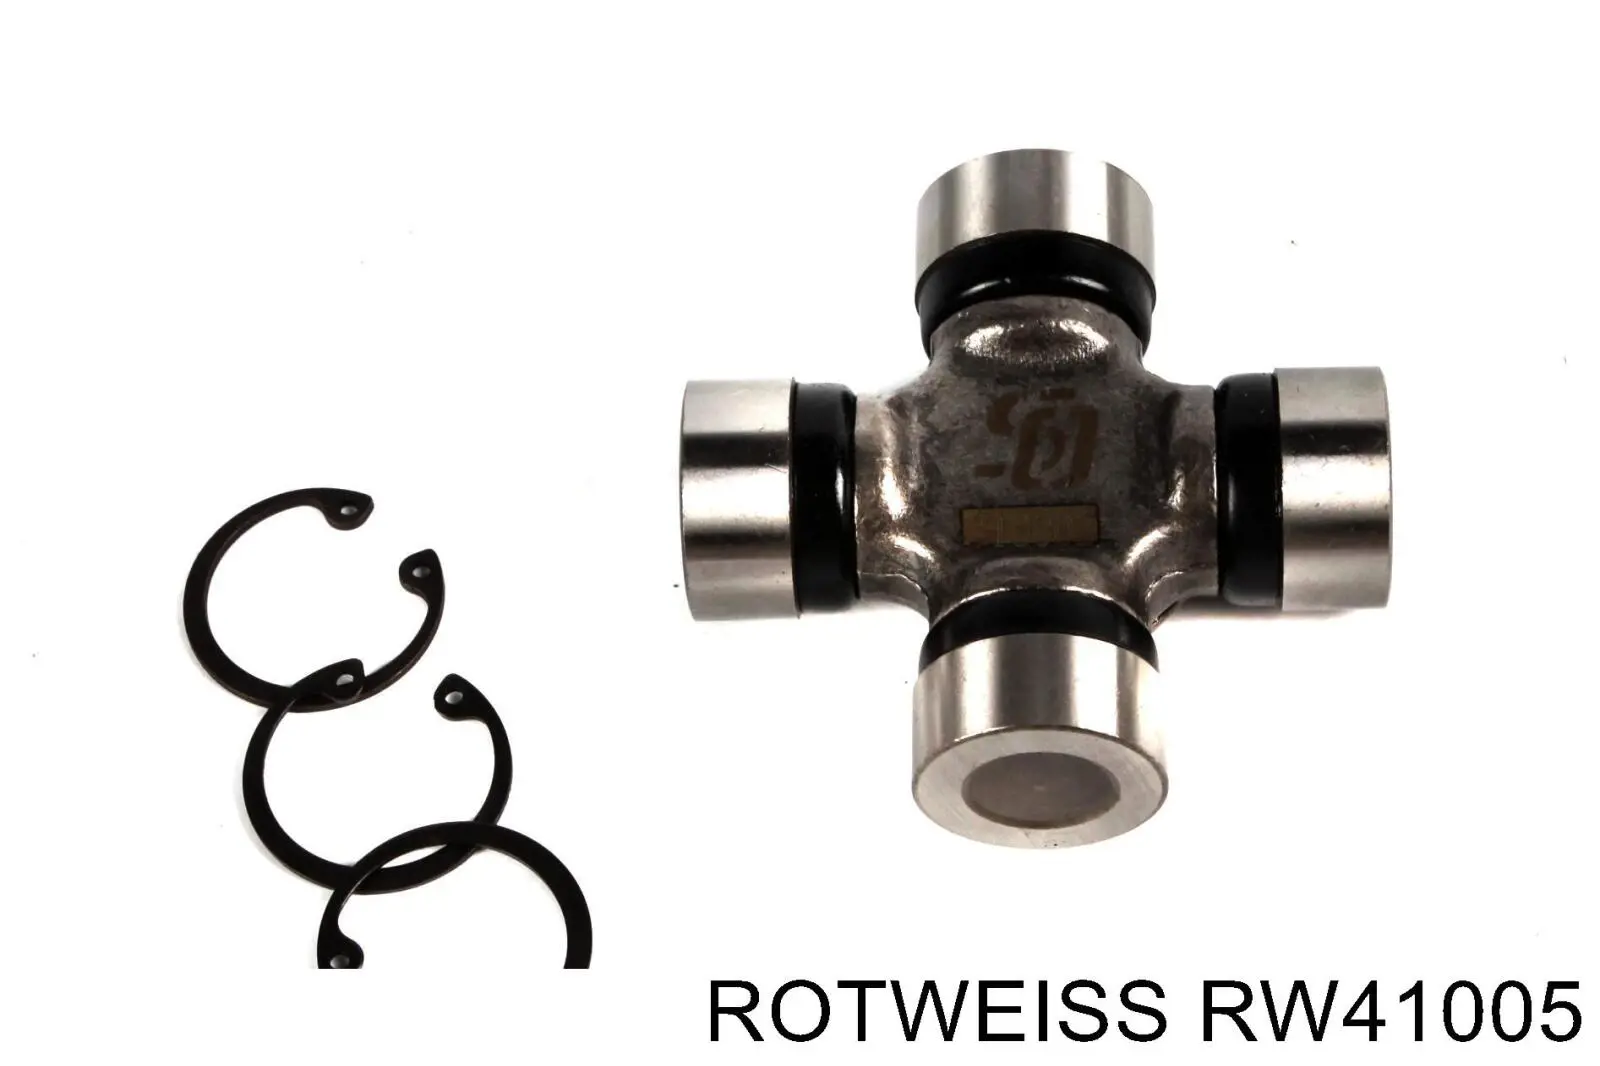 RW41005 Rotweiss крестовина карданного вала заднего